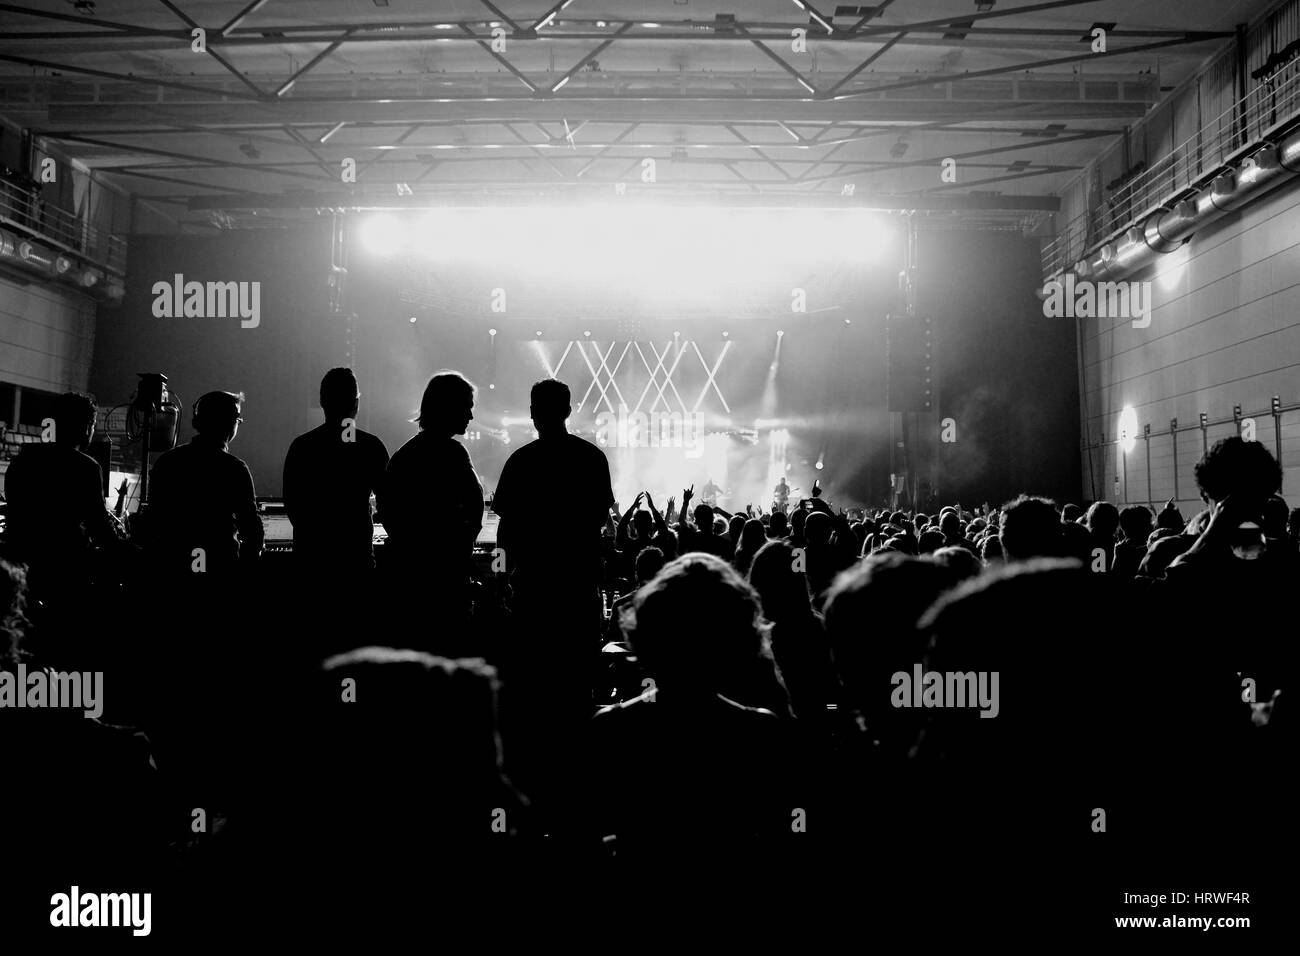 BARCELONA - 24 APR: Menge in einem Konzert in Sant Jordi Club-Bühne am 24. April 2015 in Barcelona, Spanien. Stockfoto